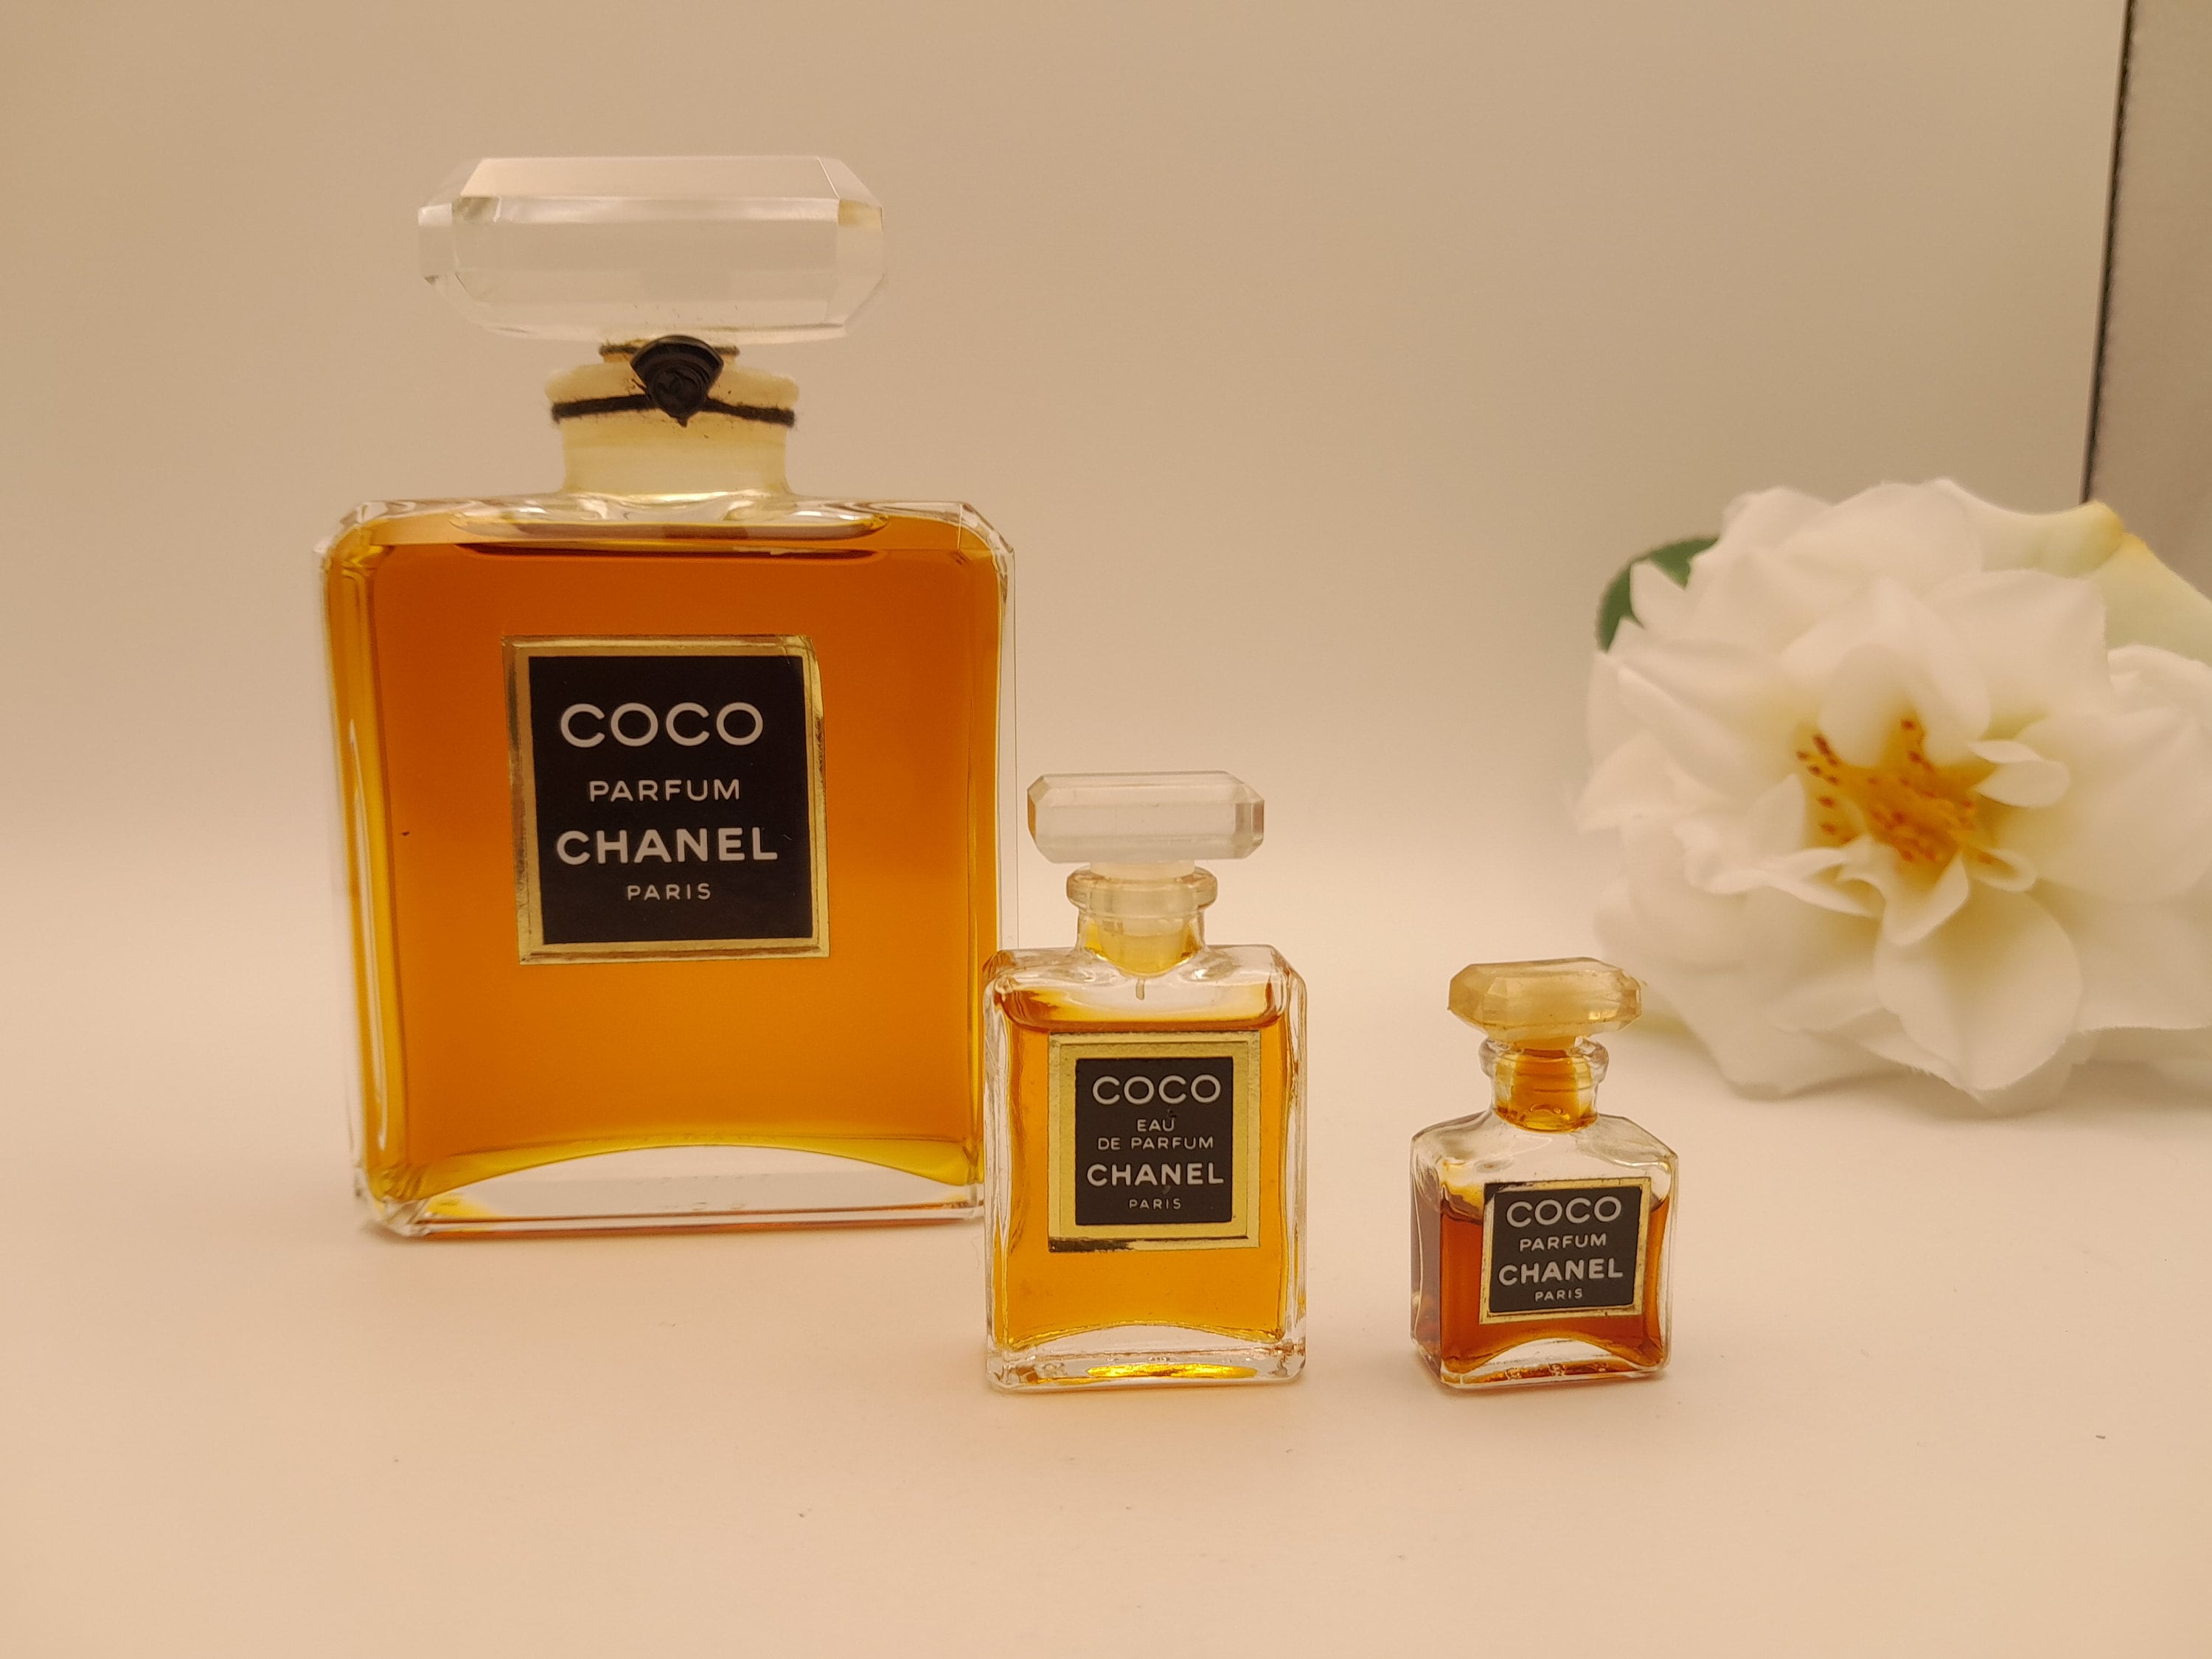 CHANEL Parfum affiches et impressions par Zoom_Out